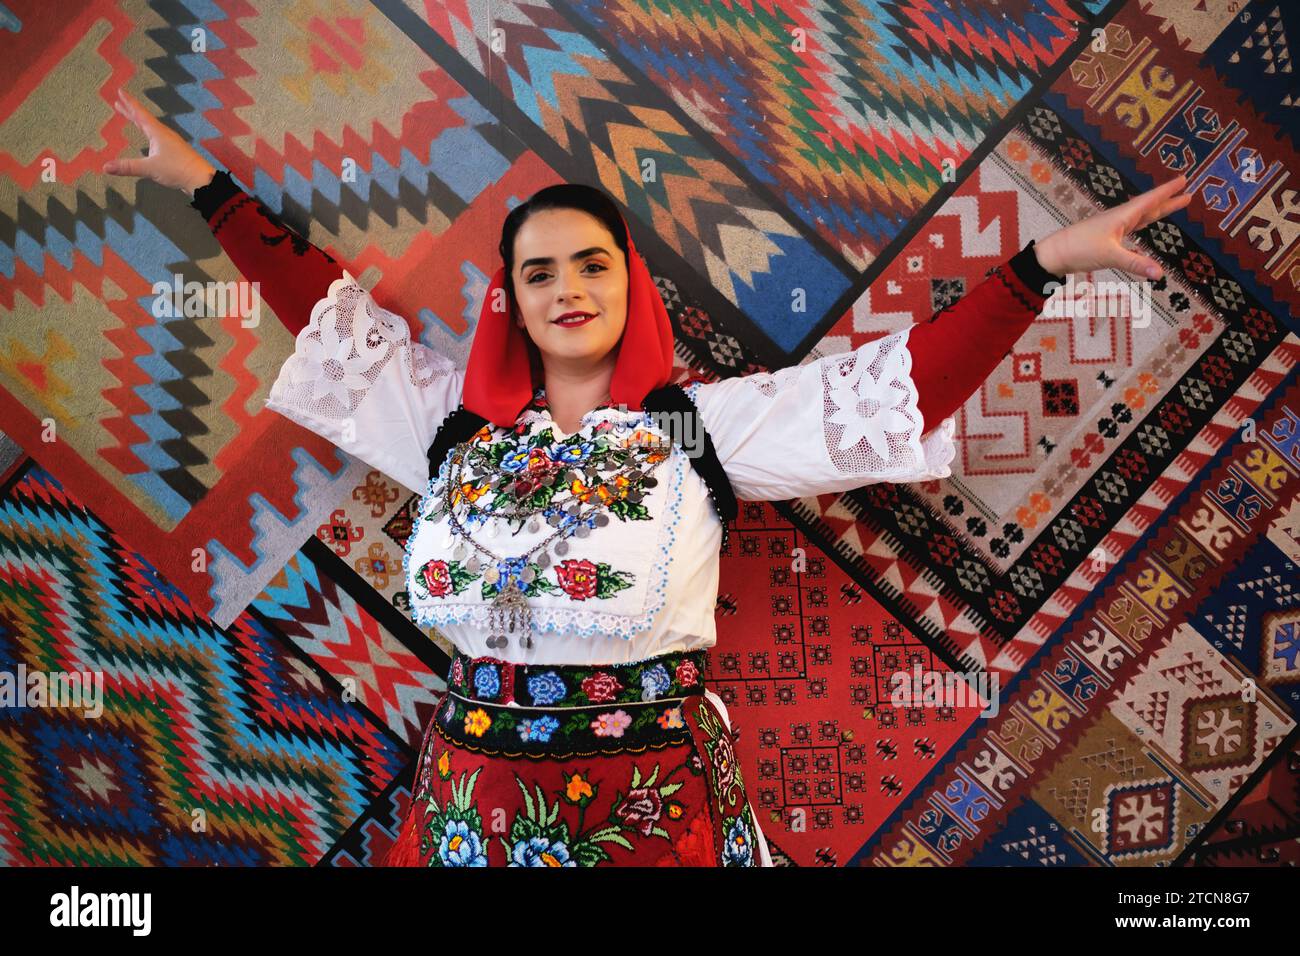 Tirana, Albanien - 28. November: Eine Frau in albanischer Kleidung posiert allein vor einem Hintergrund mit traditionellen albanischen Mustern Stockfoto